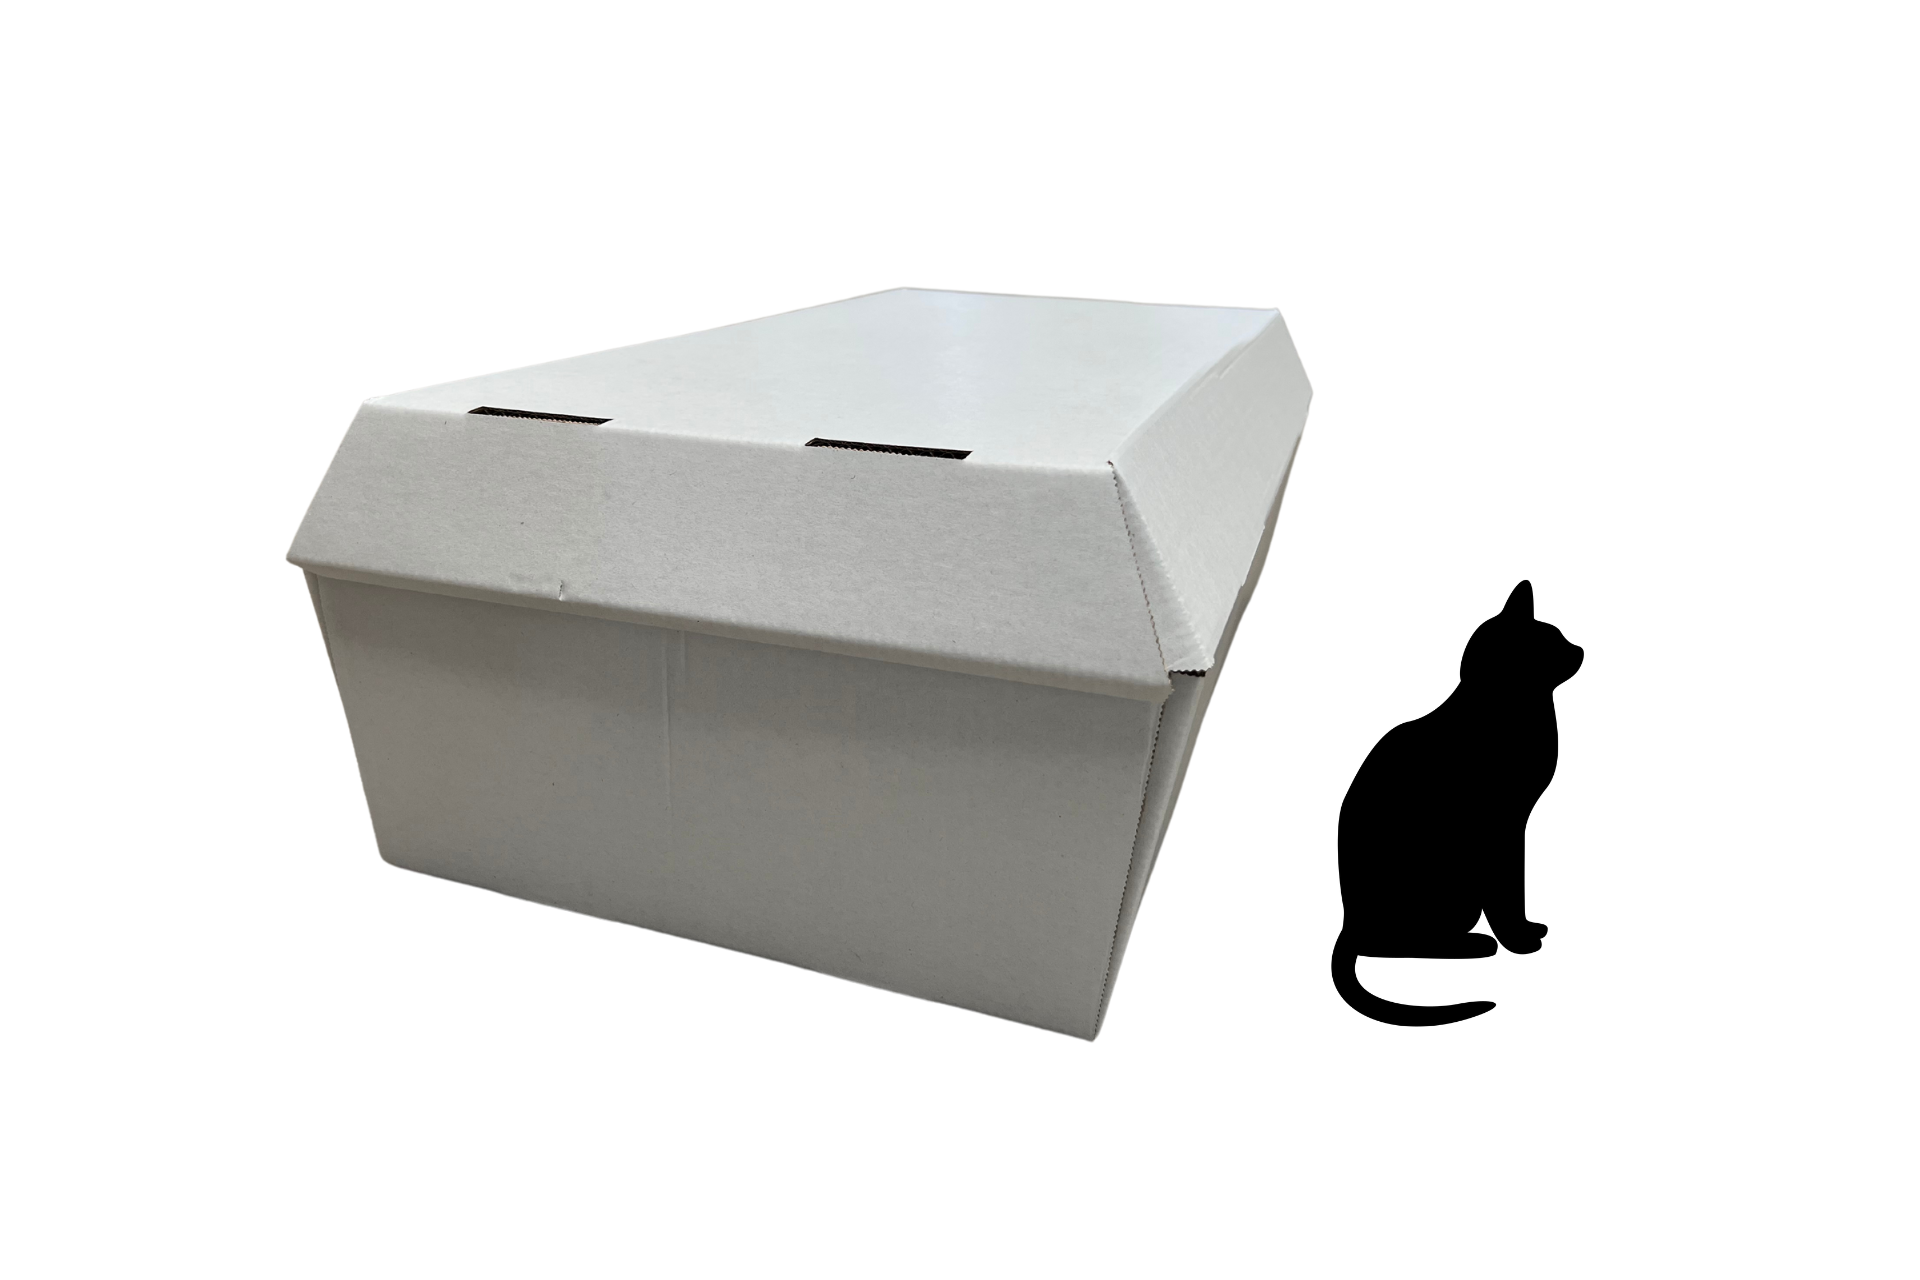 Cardboard animal coffin, various sizes